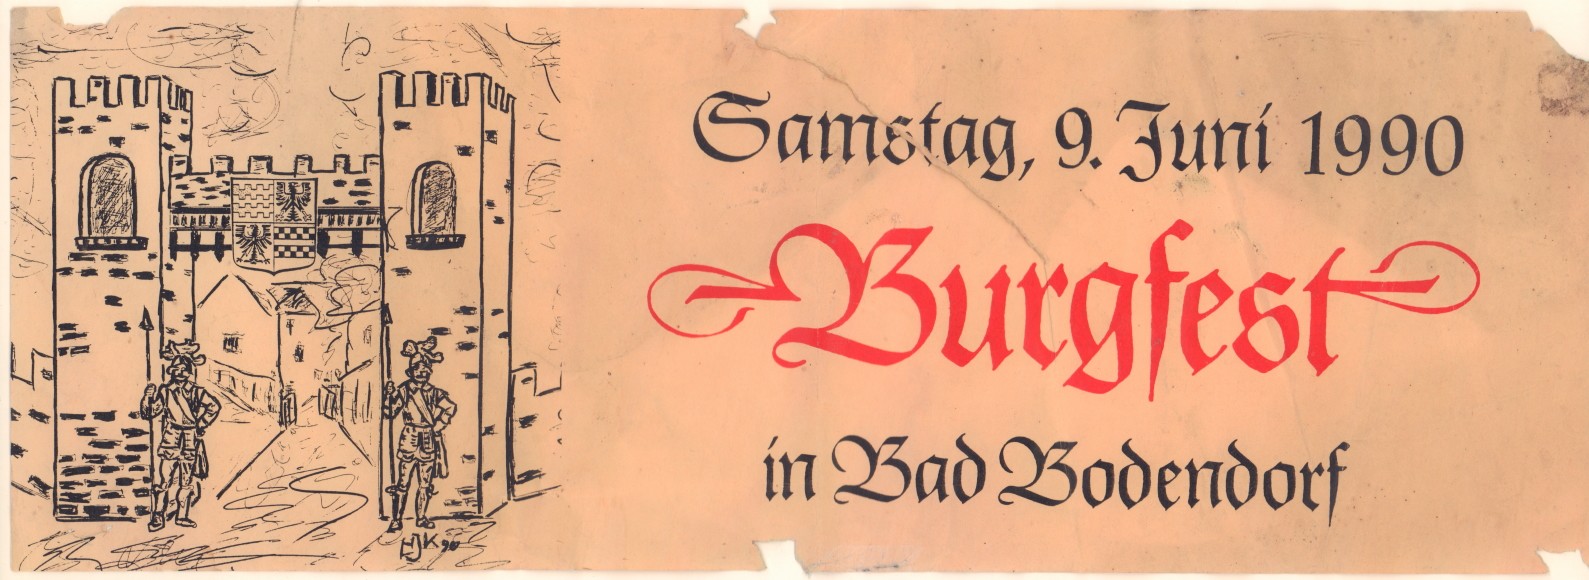 Einladungsplakat zum Burffest 1990 in Bad Bodendorf (Heimatmuseum und -Archiv Bad Bodendorf CC BY-NC-SA)